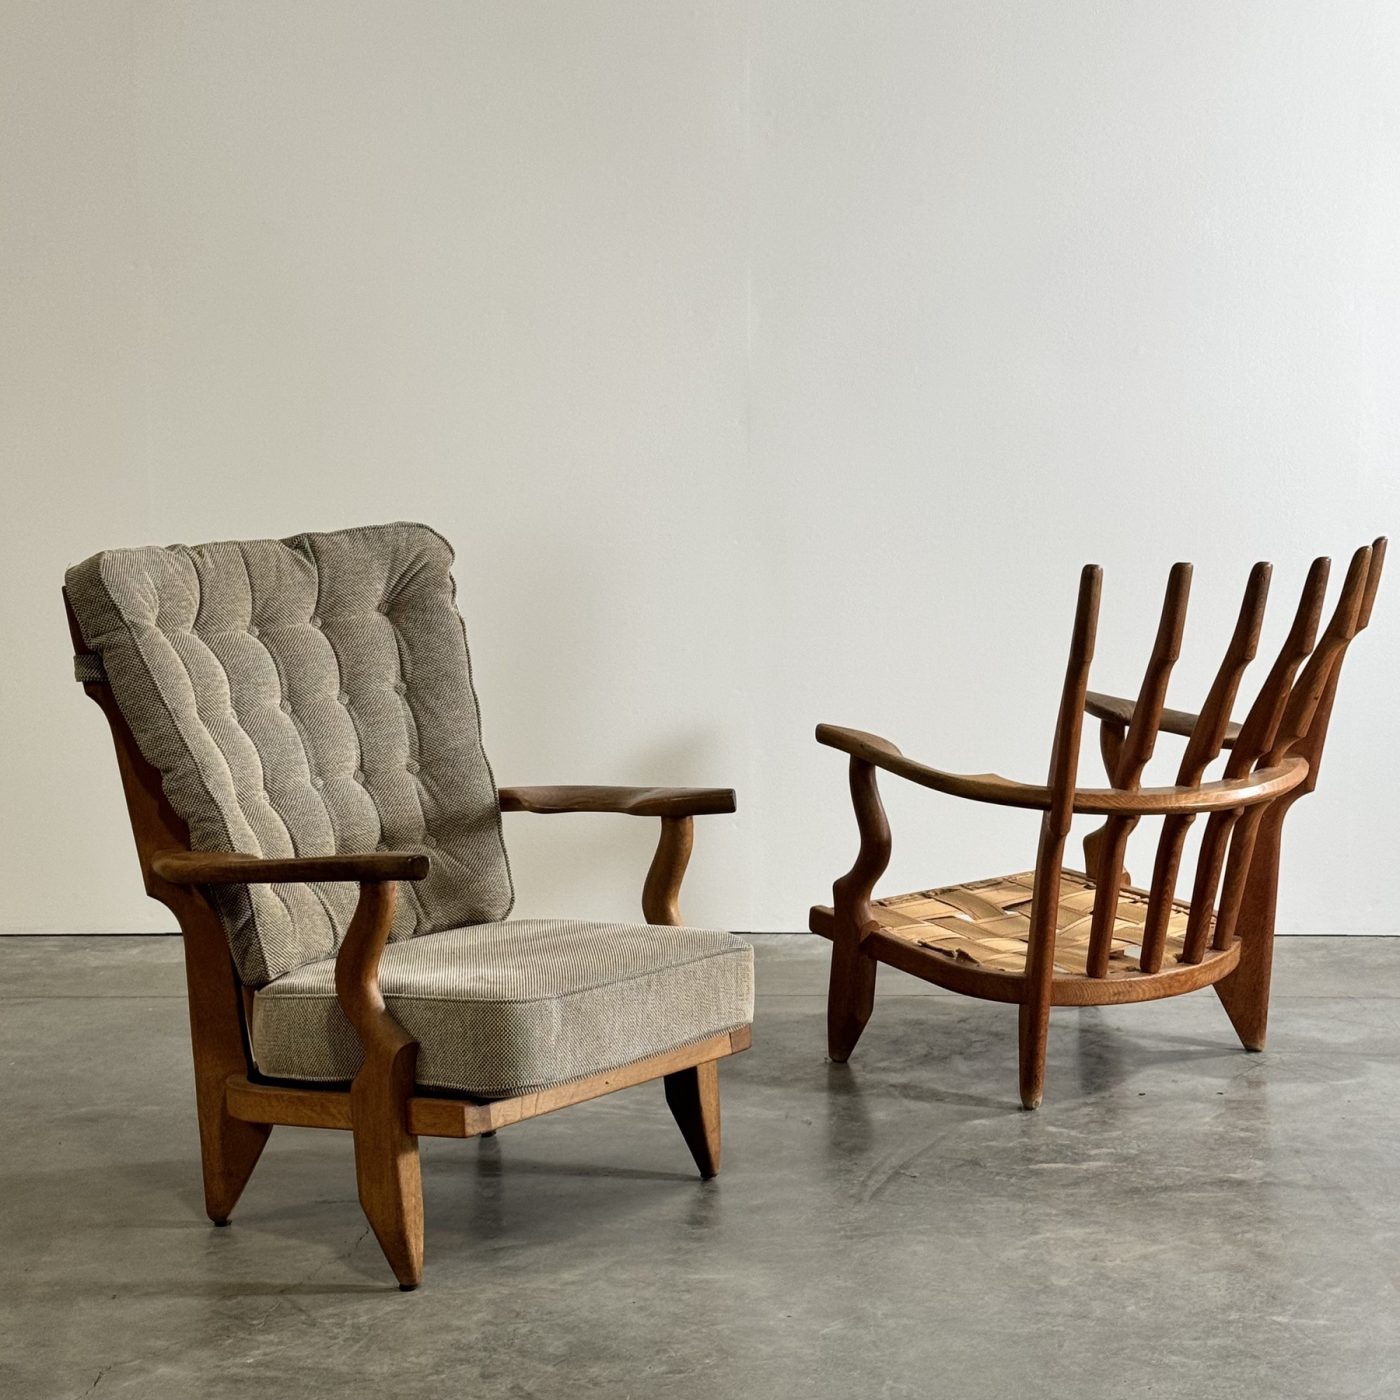 objet-vagabond-guillerme-armchairs0002